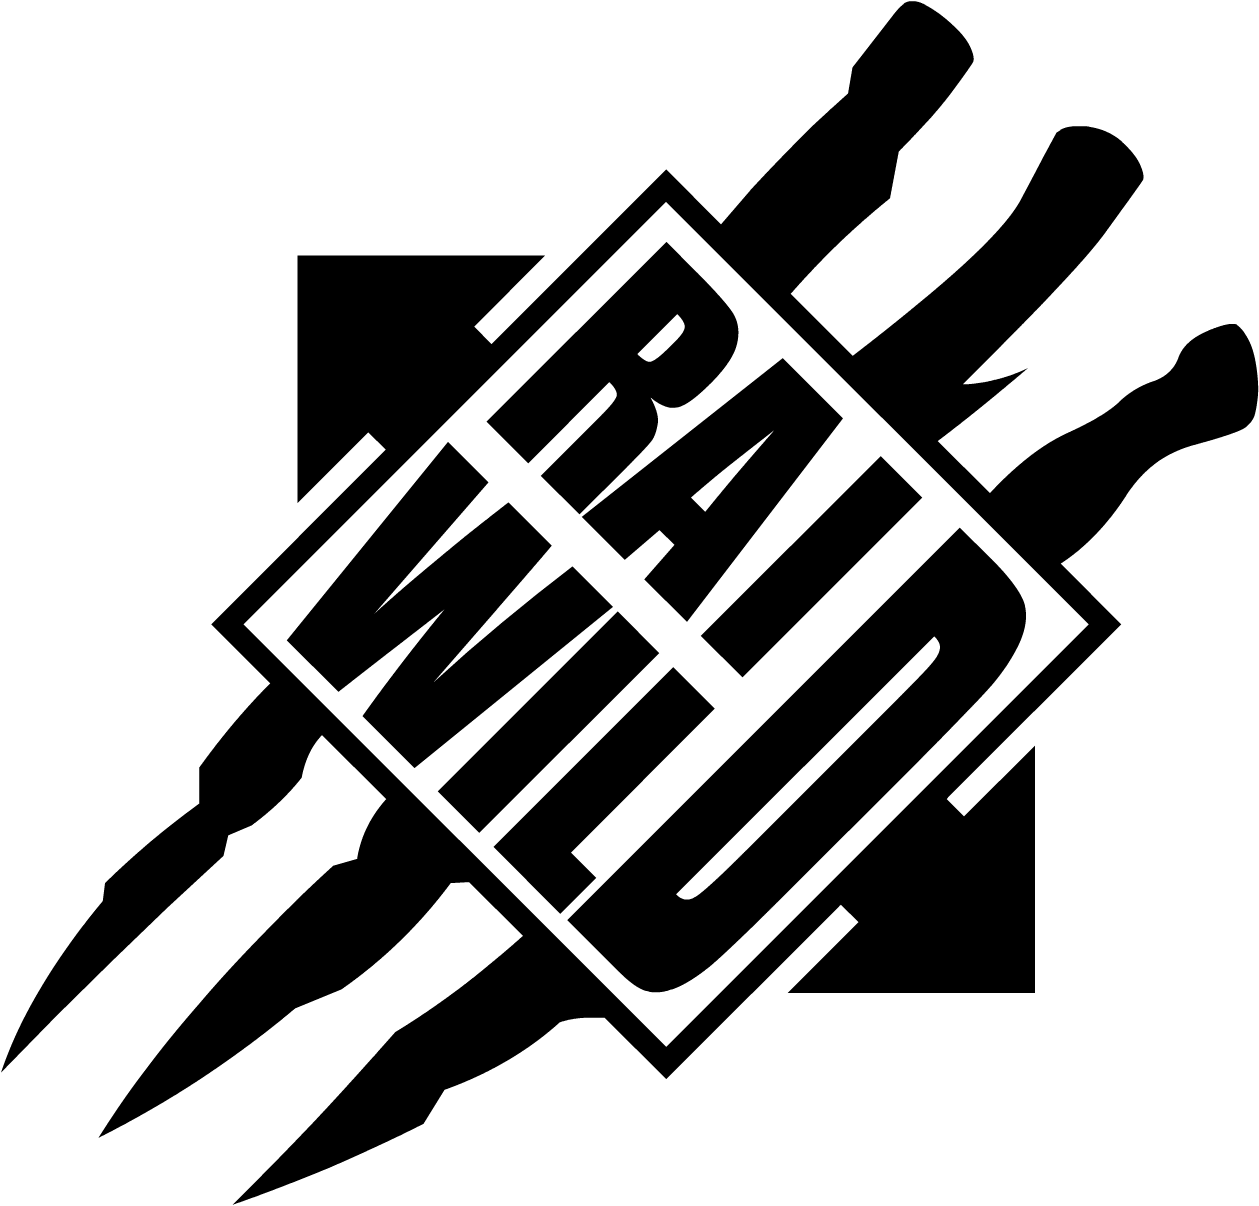 Gaim vector - Team Raid Wild logo